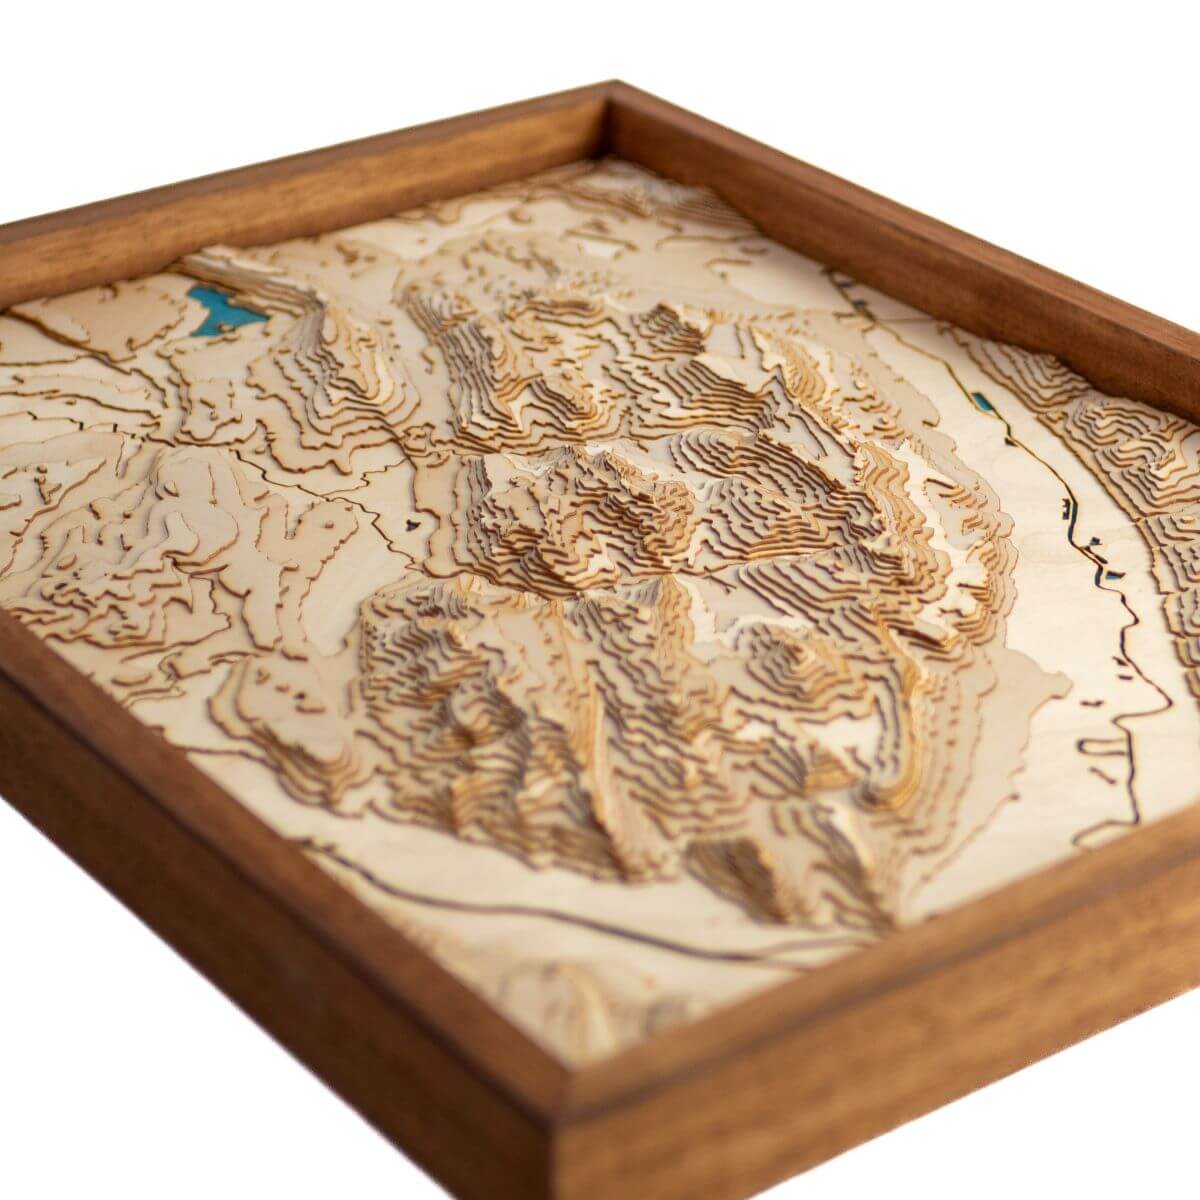 Détails du relief de la carte du massif de la Chartreuse en bois